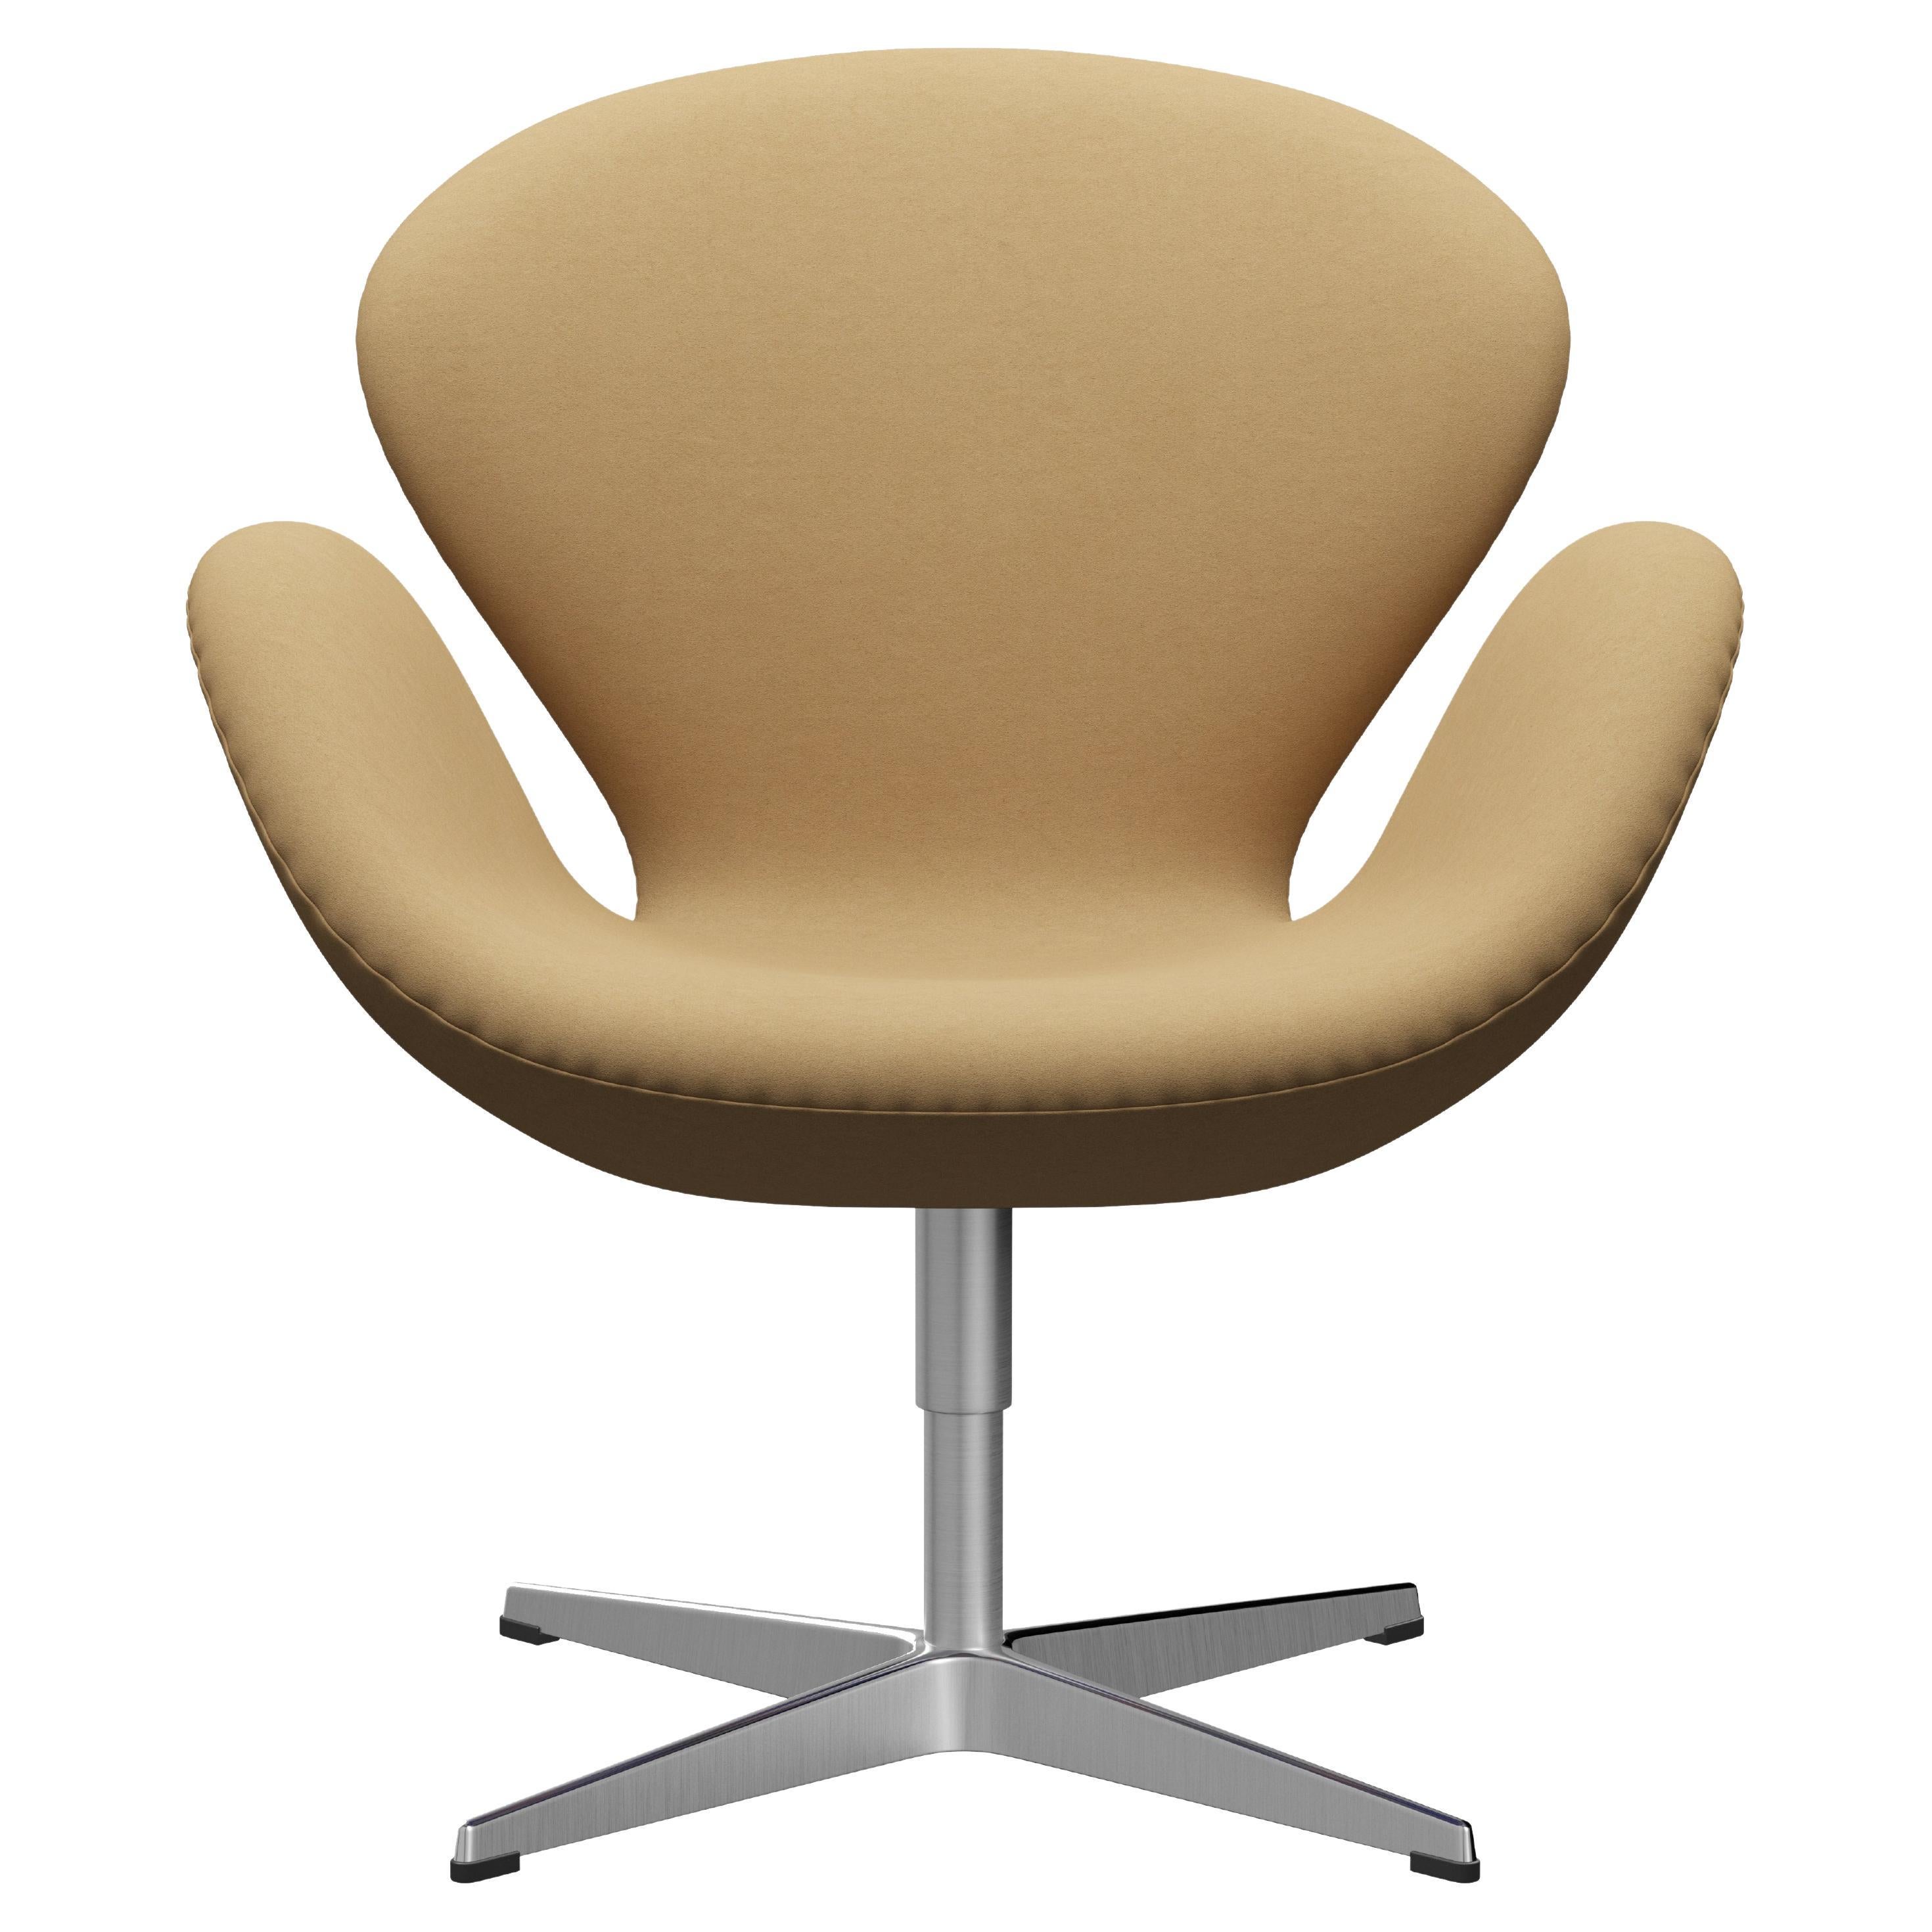 Arne Jacobsen 'Swan' Chair for Fritz Hansen in Fabric Upholstery (Cat. 3)